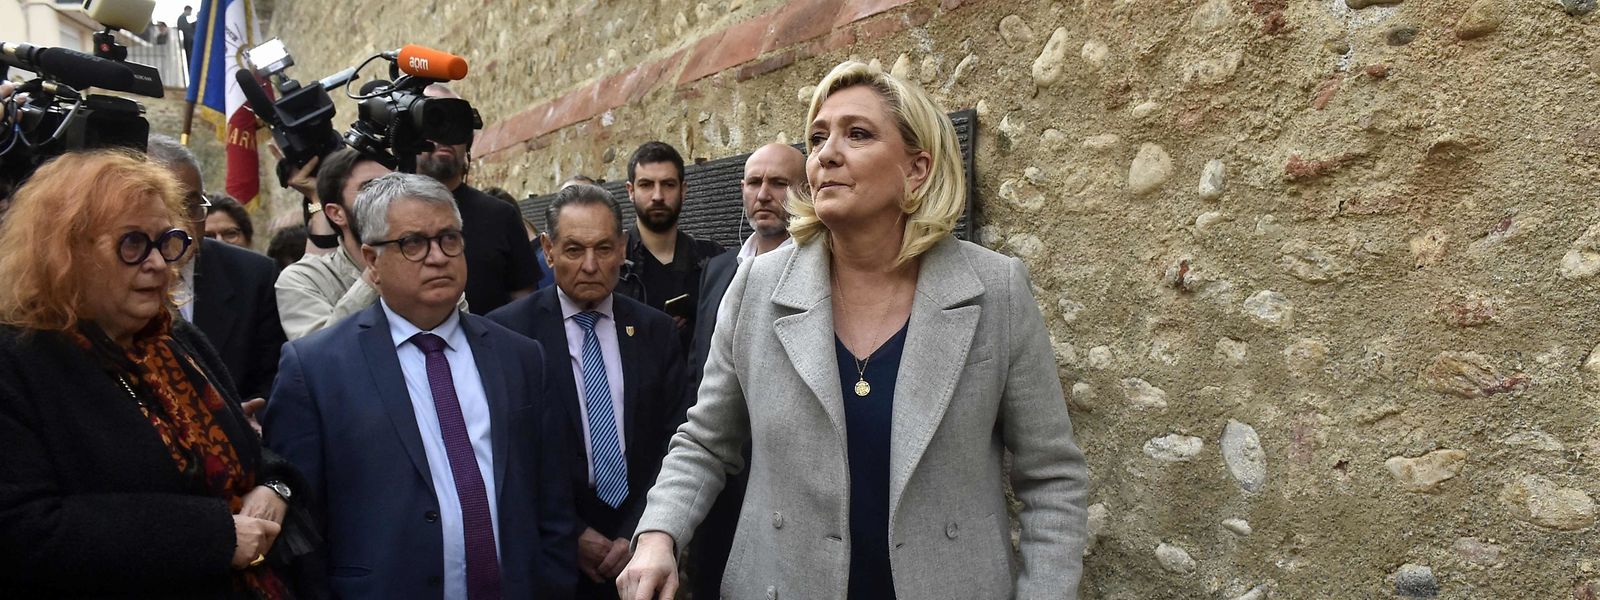 La candidate du RN Marine Le Pen rend hommage à un monument à la mémoire des "disparus sans sépulture" pendant la guerre en Algérie dans le cadre d'un voyage de campagne à Perpignan.